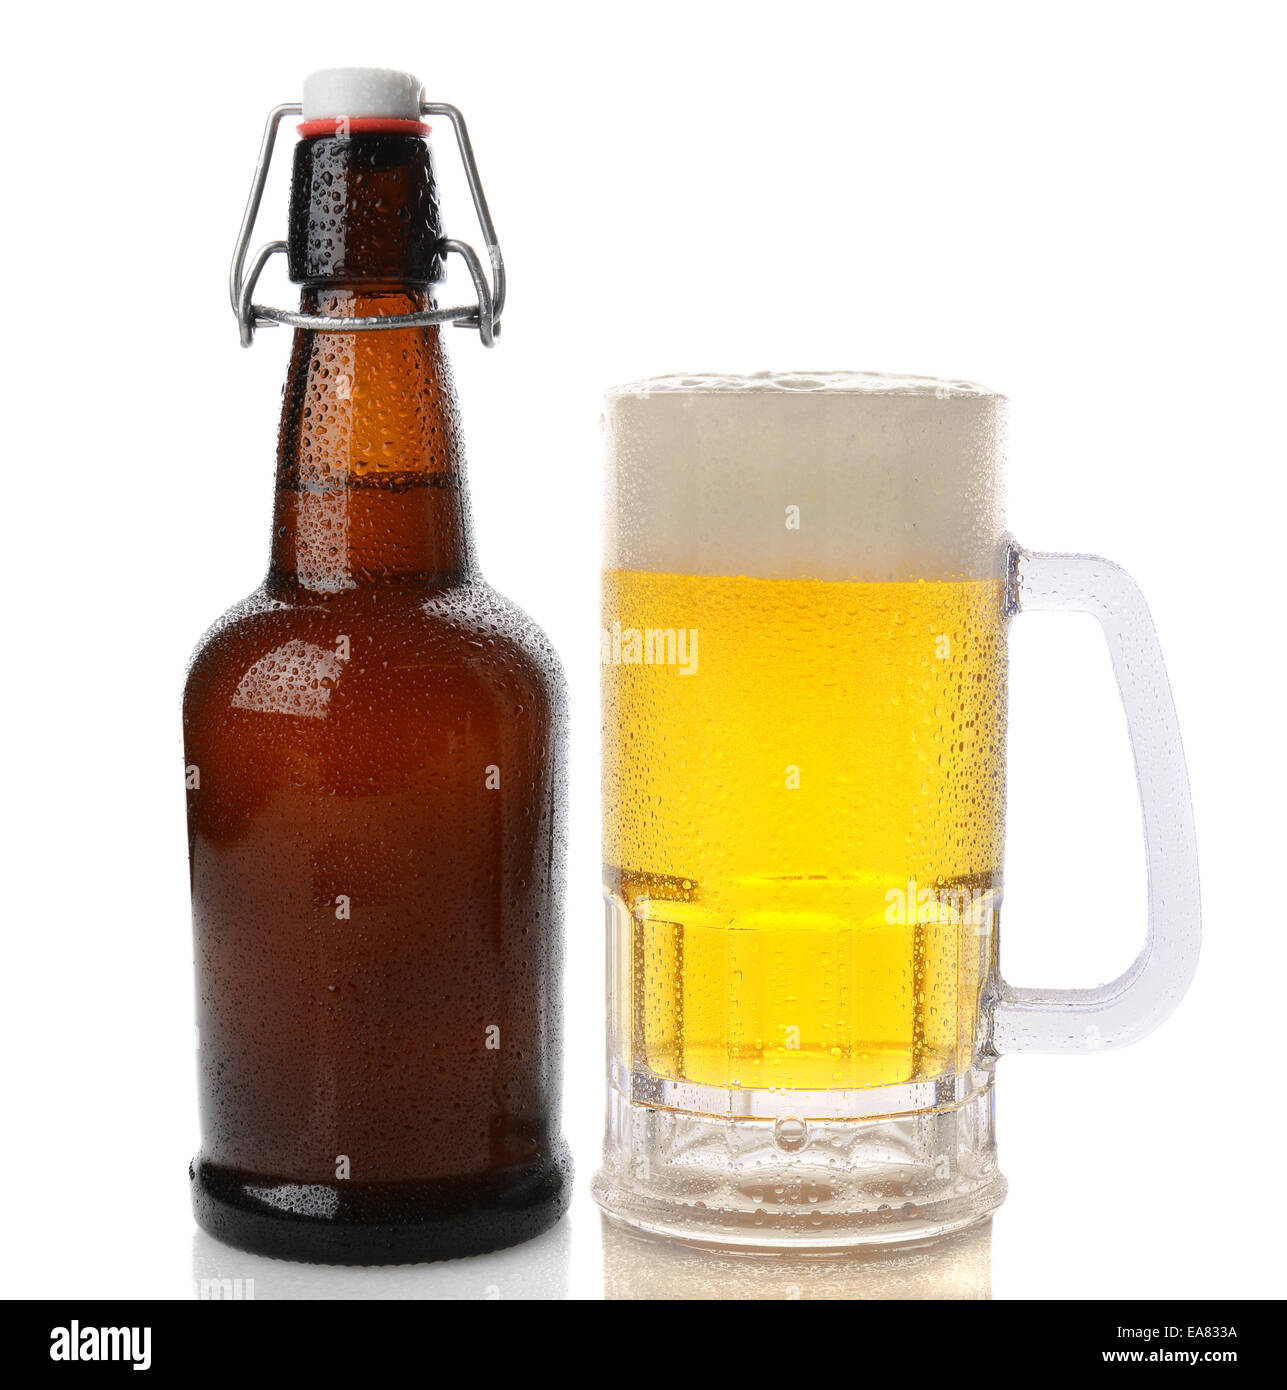 Primo piano di una tazza di birra con una testa di schiumato accanto a una swing top brown bottiglia di birra. Dritto sparato su uno sfondo bianco con r Foto Stock